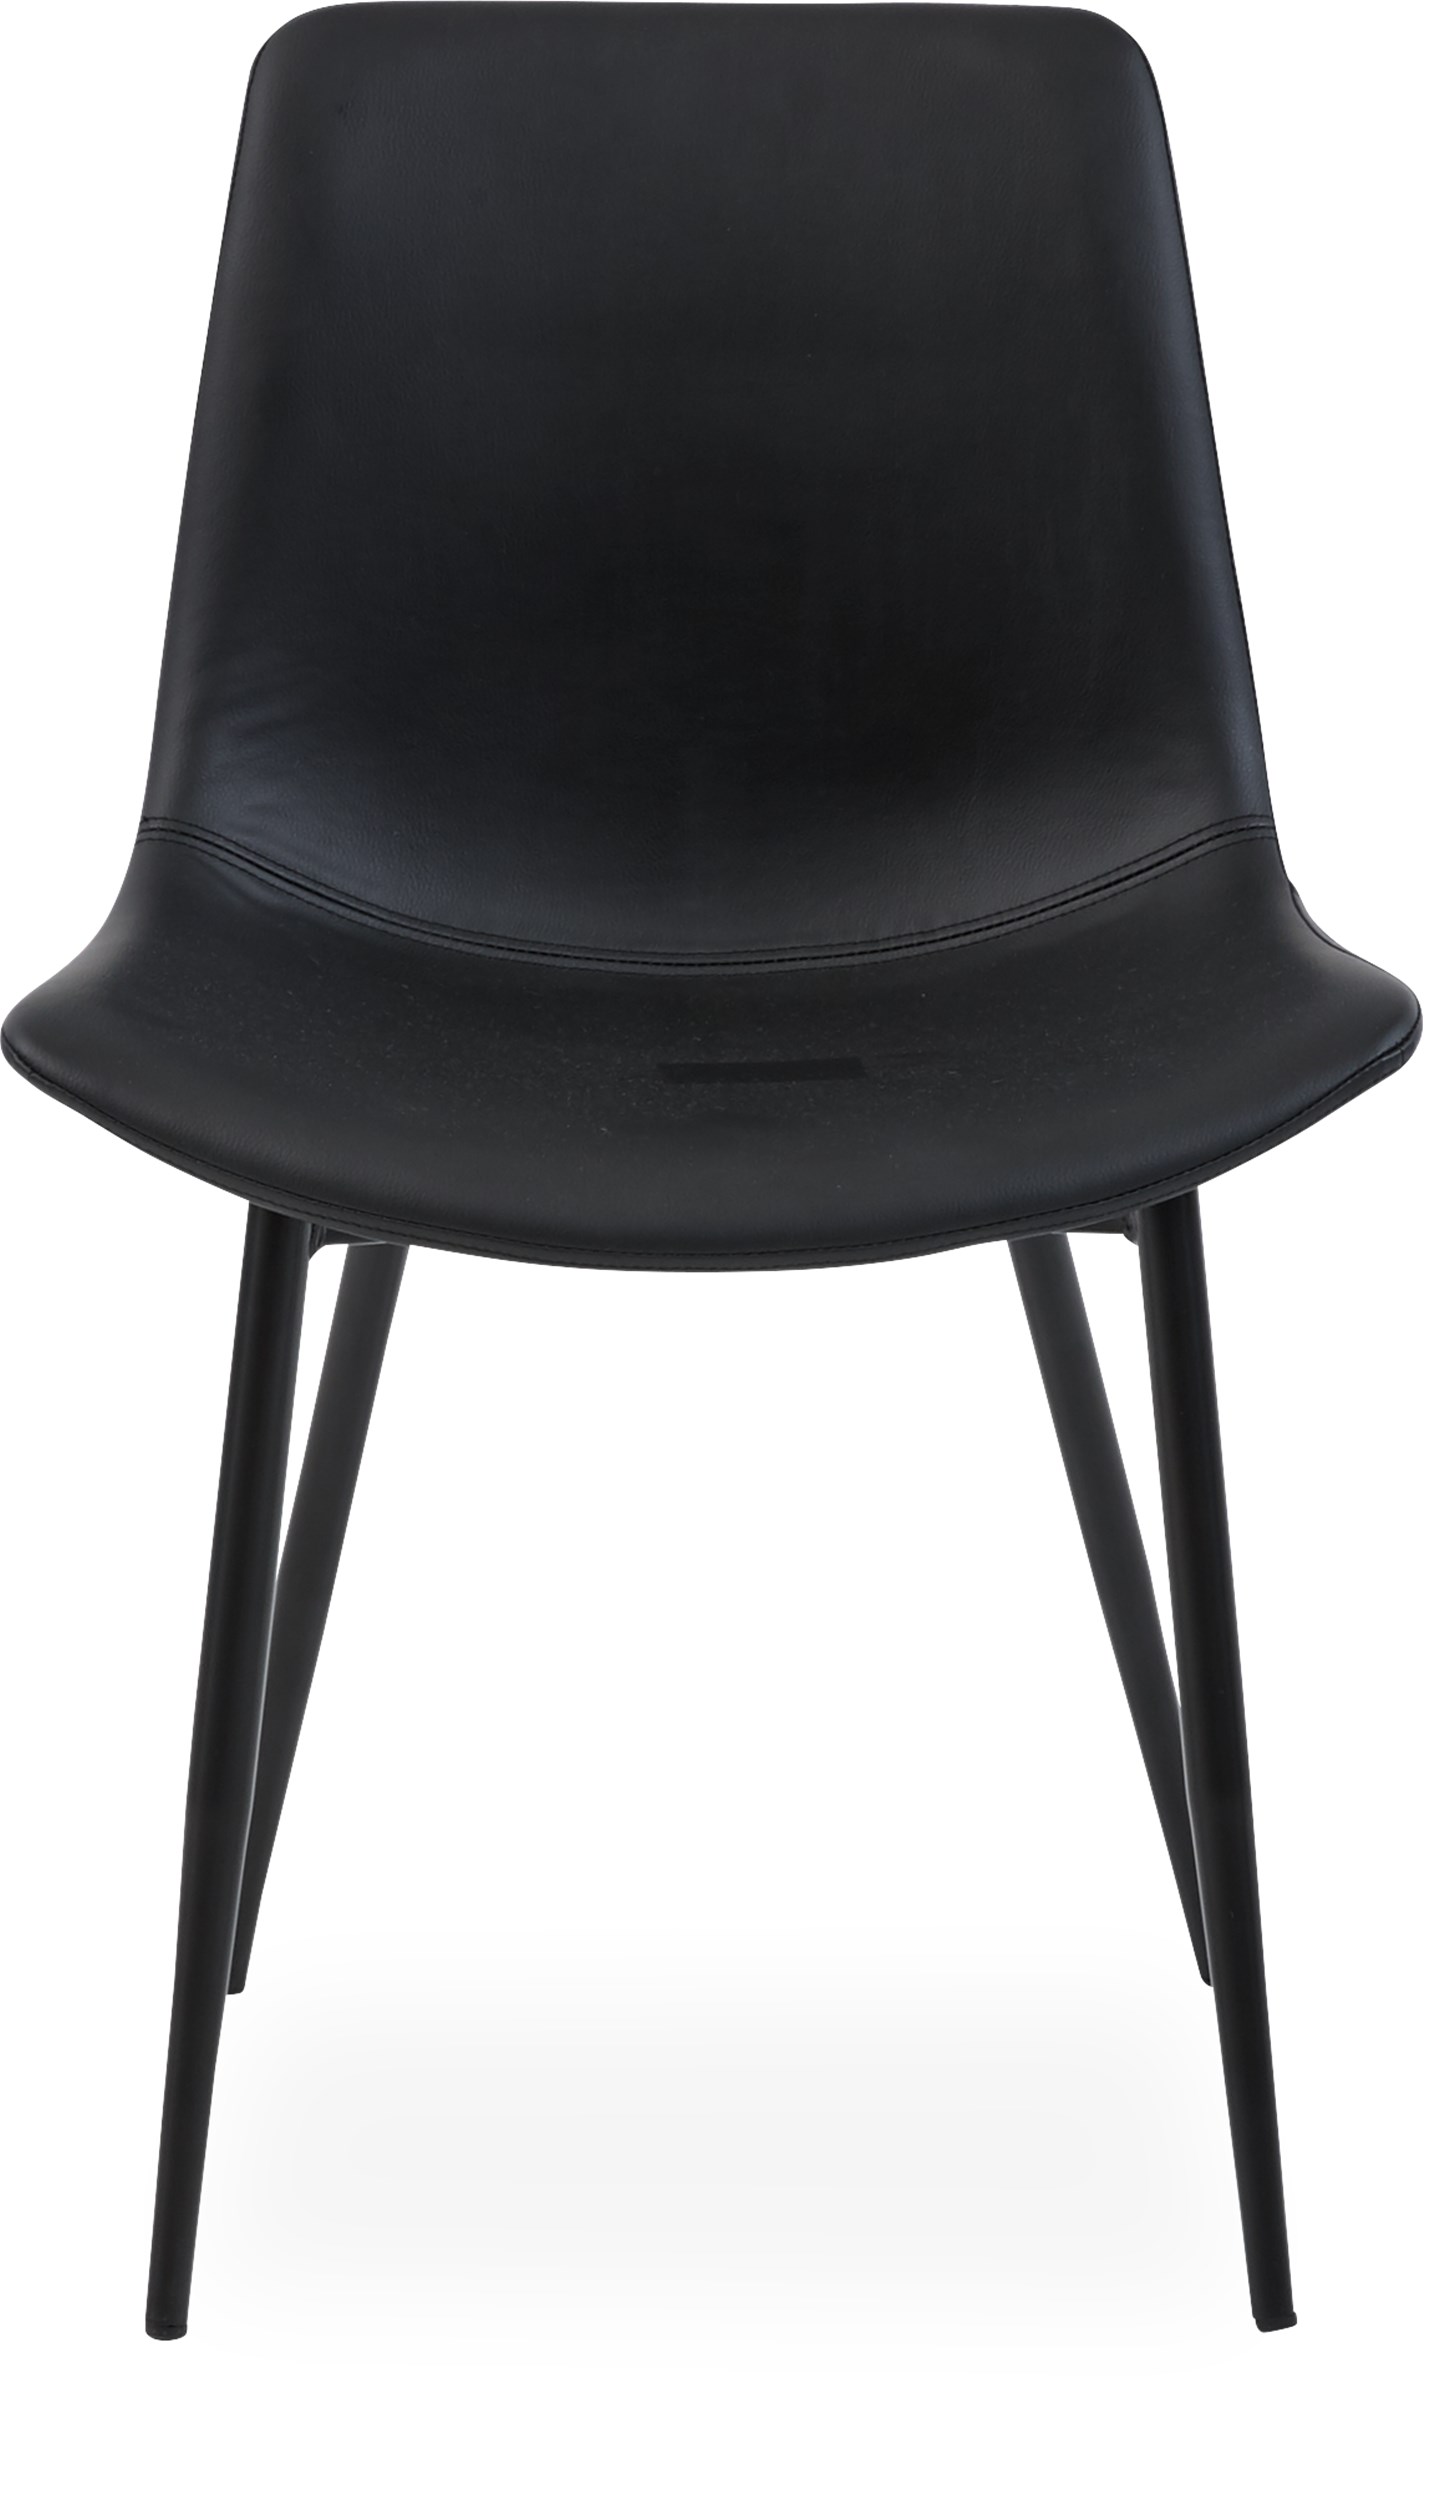 Carolina matstol - Sits i svart konstläder och ben i svart pulverlackerat stål